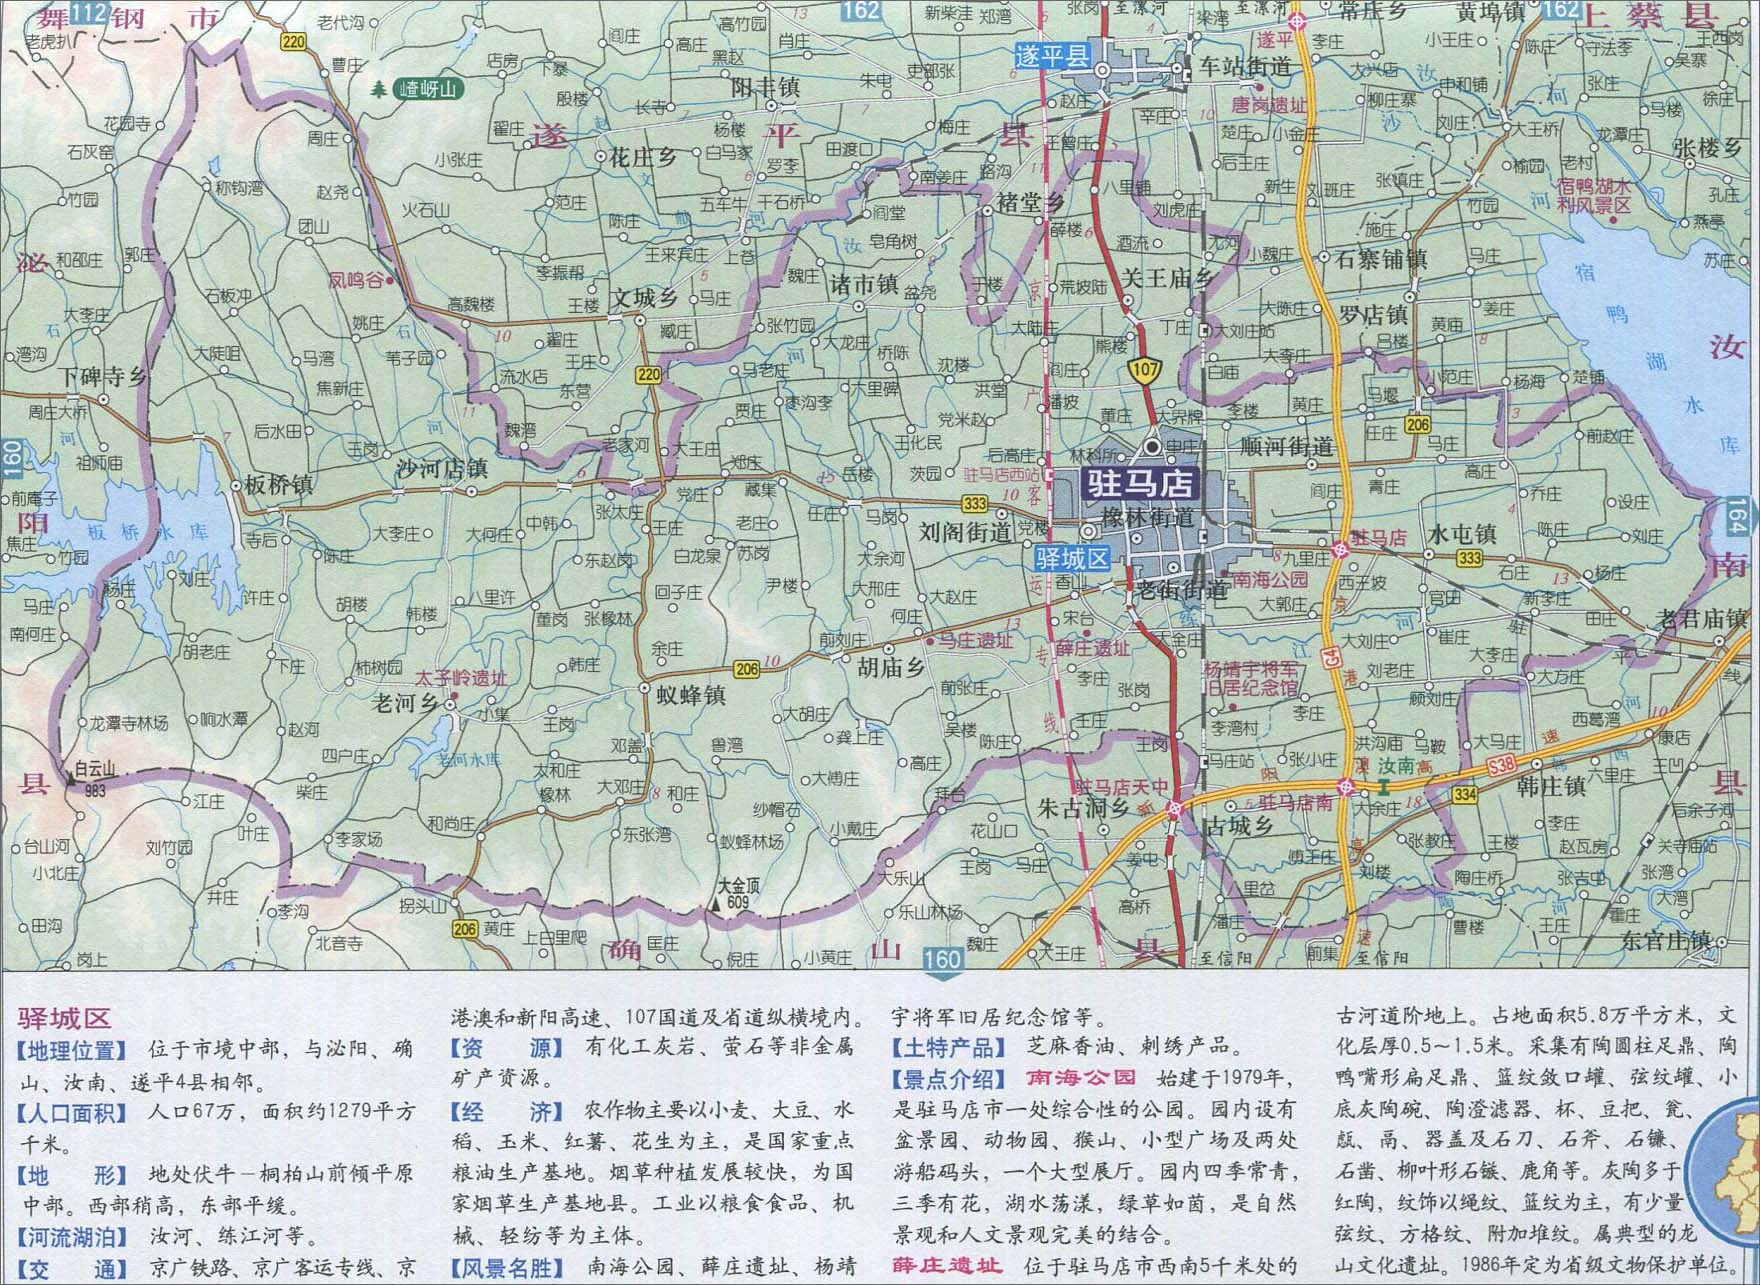 上一幅地图: 新蔡县地图图片